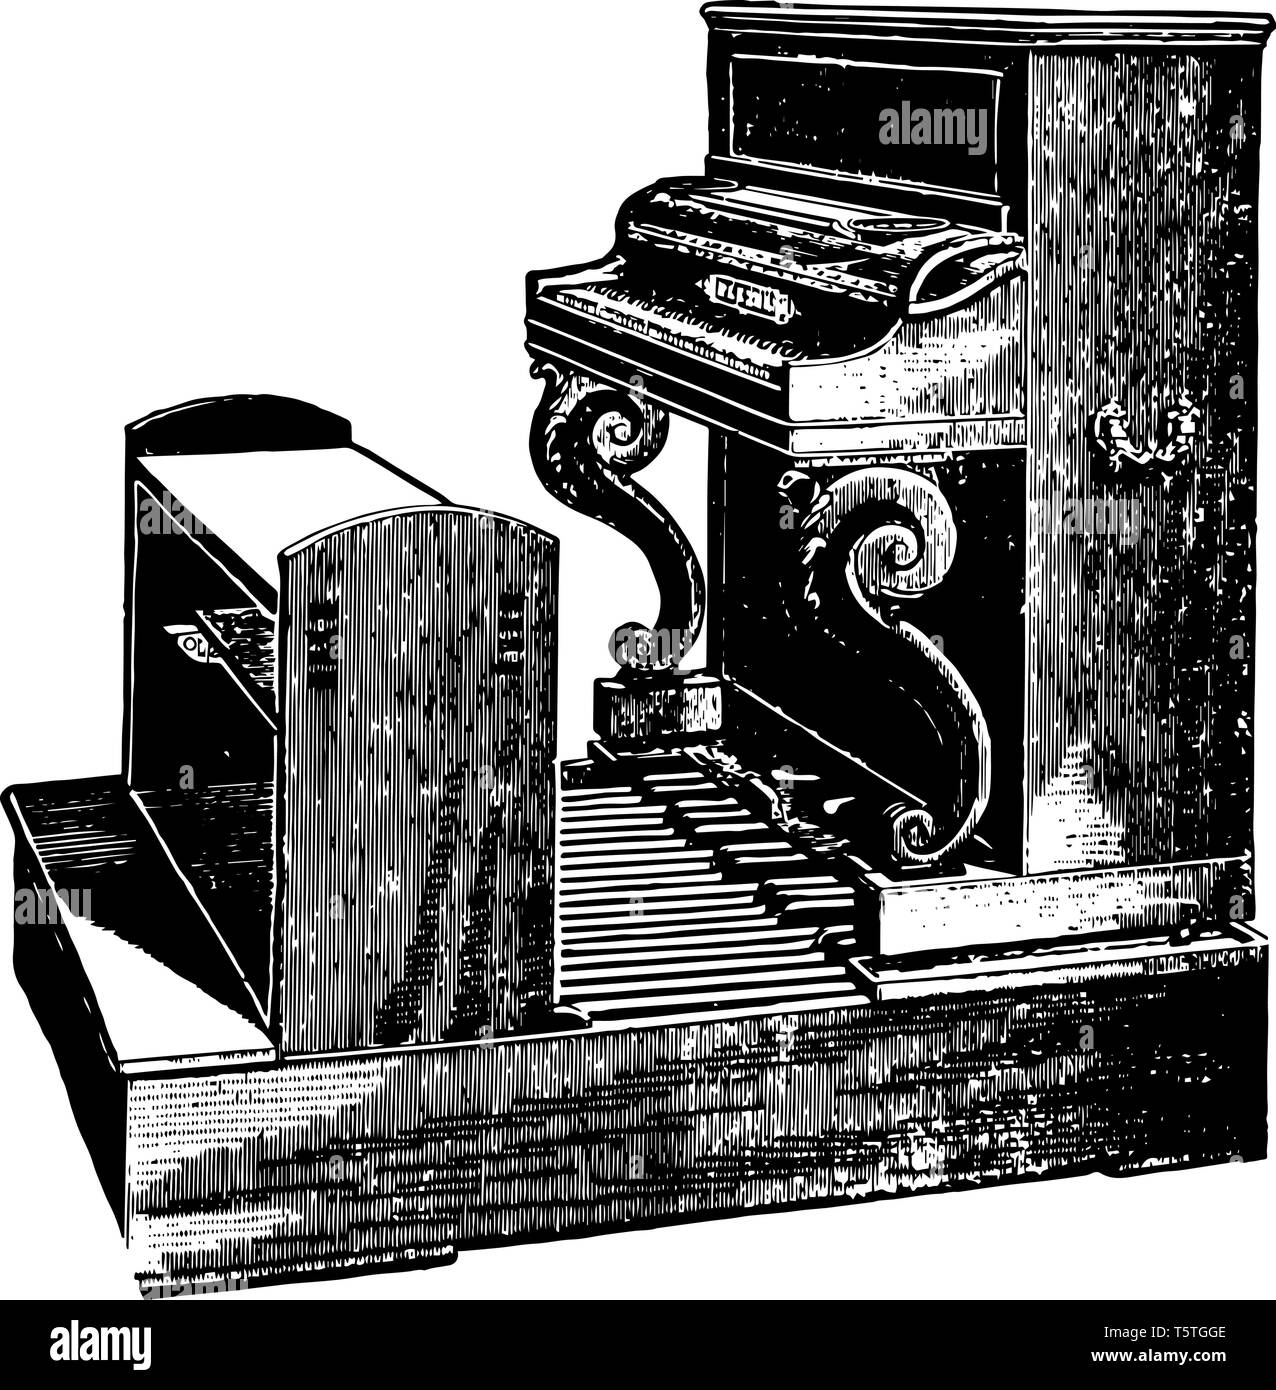 Pianoforte con Pedaliera scheda chiave necessariamente priva il giocatore dell'uso dei pedali ordinaria dello strumento, vintage disegno della linea o incisione di illu Illustrazione Vettoriale